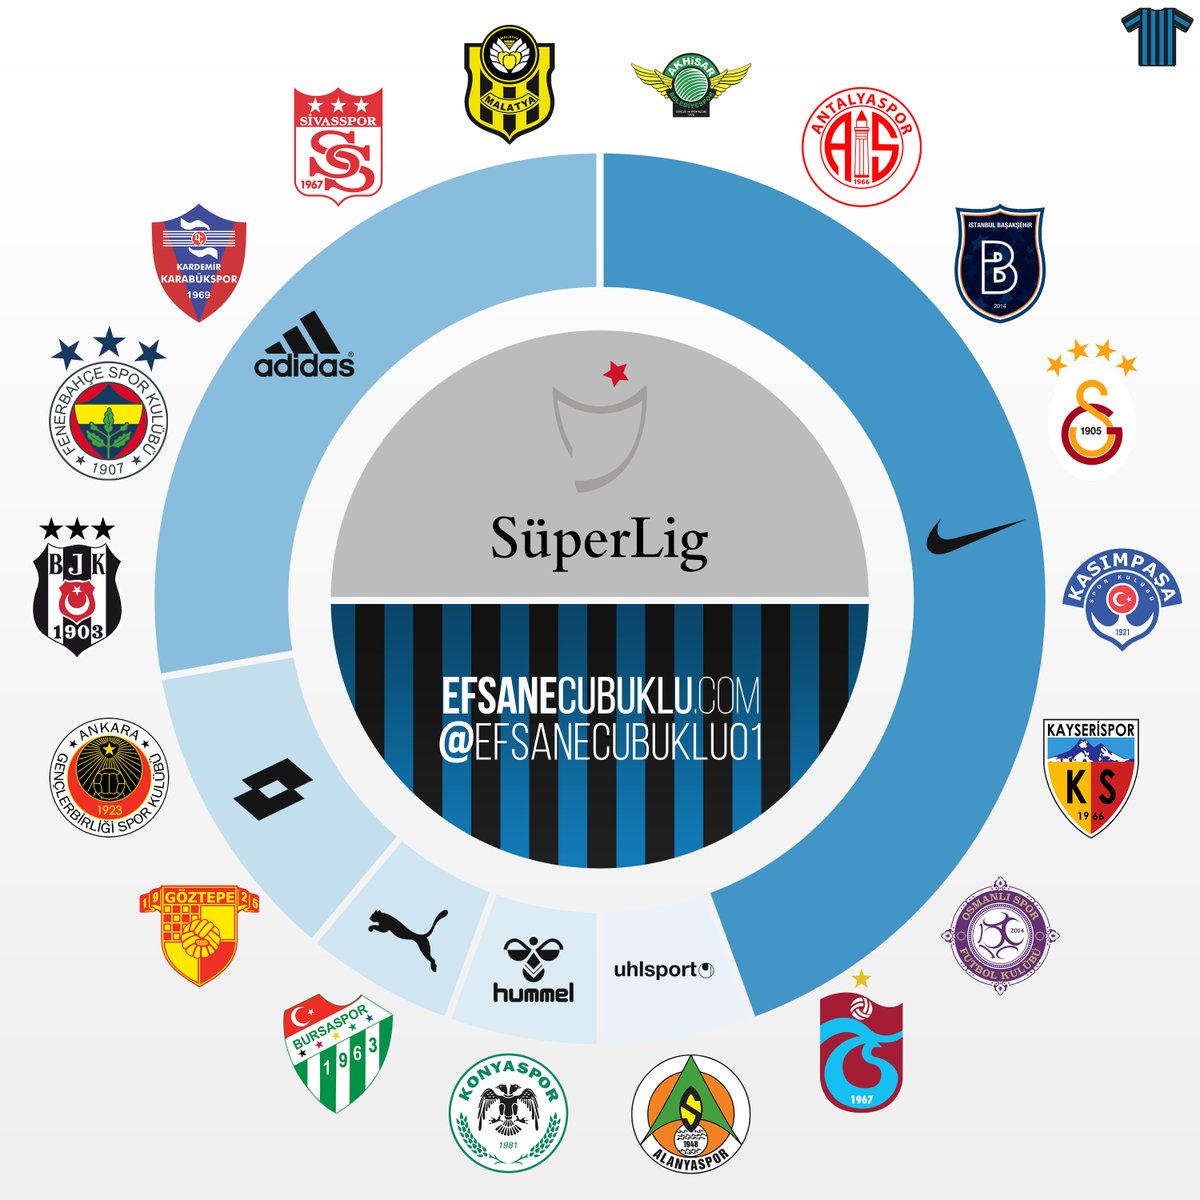 Süper Lig Teams